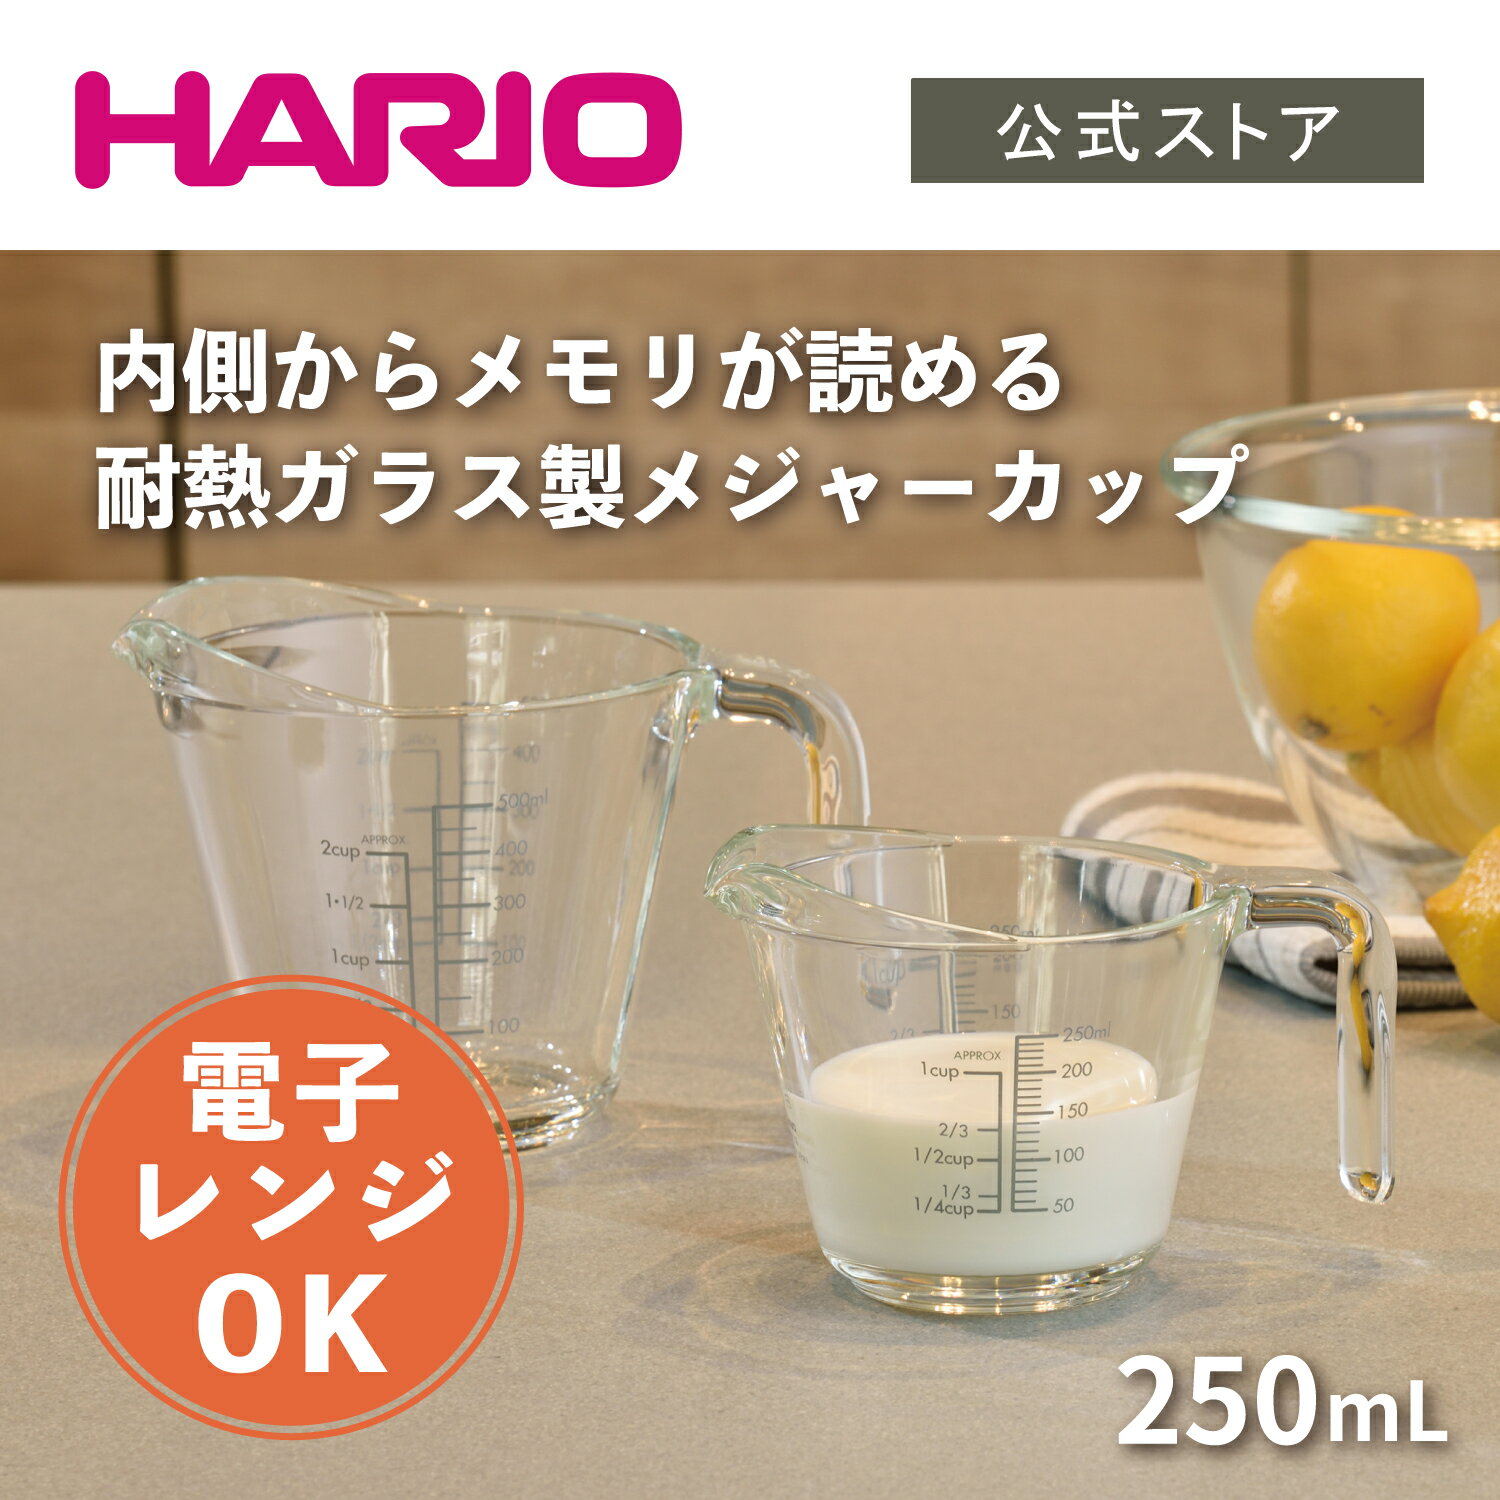 【公式ショップ】HARIO メジャーカップ 250 ハリオ 計量カップ メジャーカップ ガラス 耐熱ガラス メモリ付き 250ml 日本製